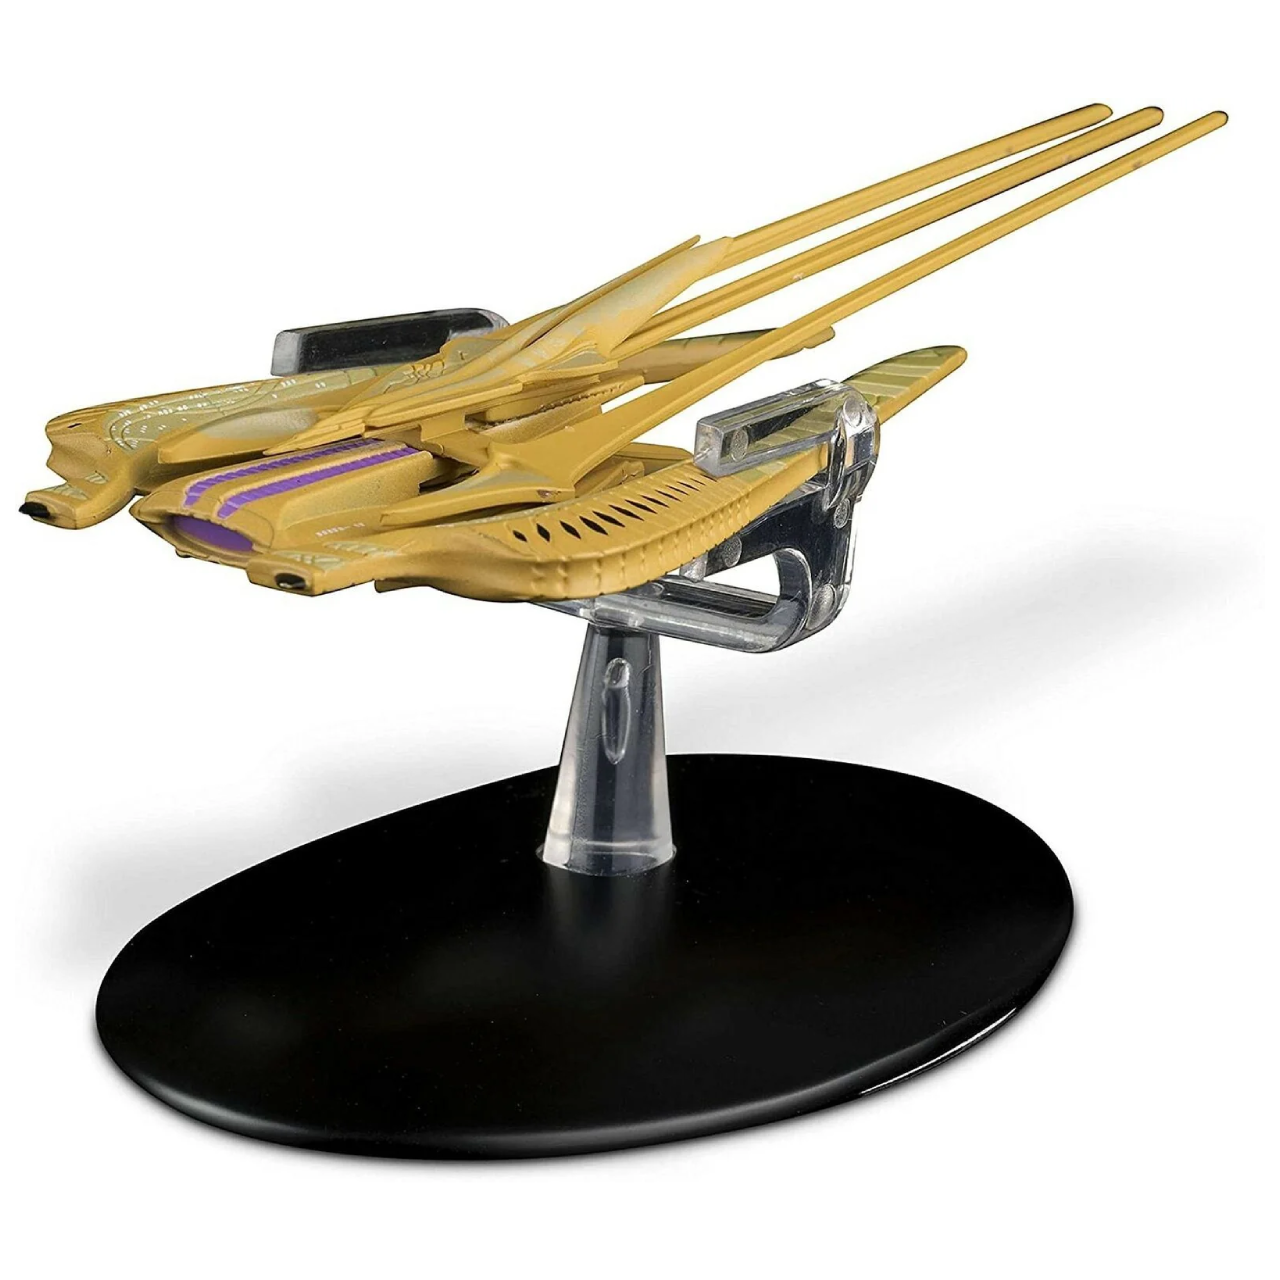 Eaglemoss STAR TREK Xindi-Reptilian WarShips Starship Modèle moulé sous pression (numéro 81)